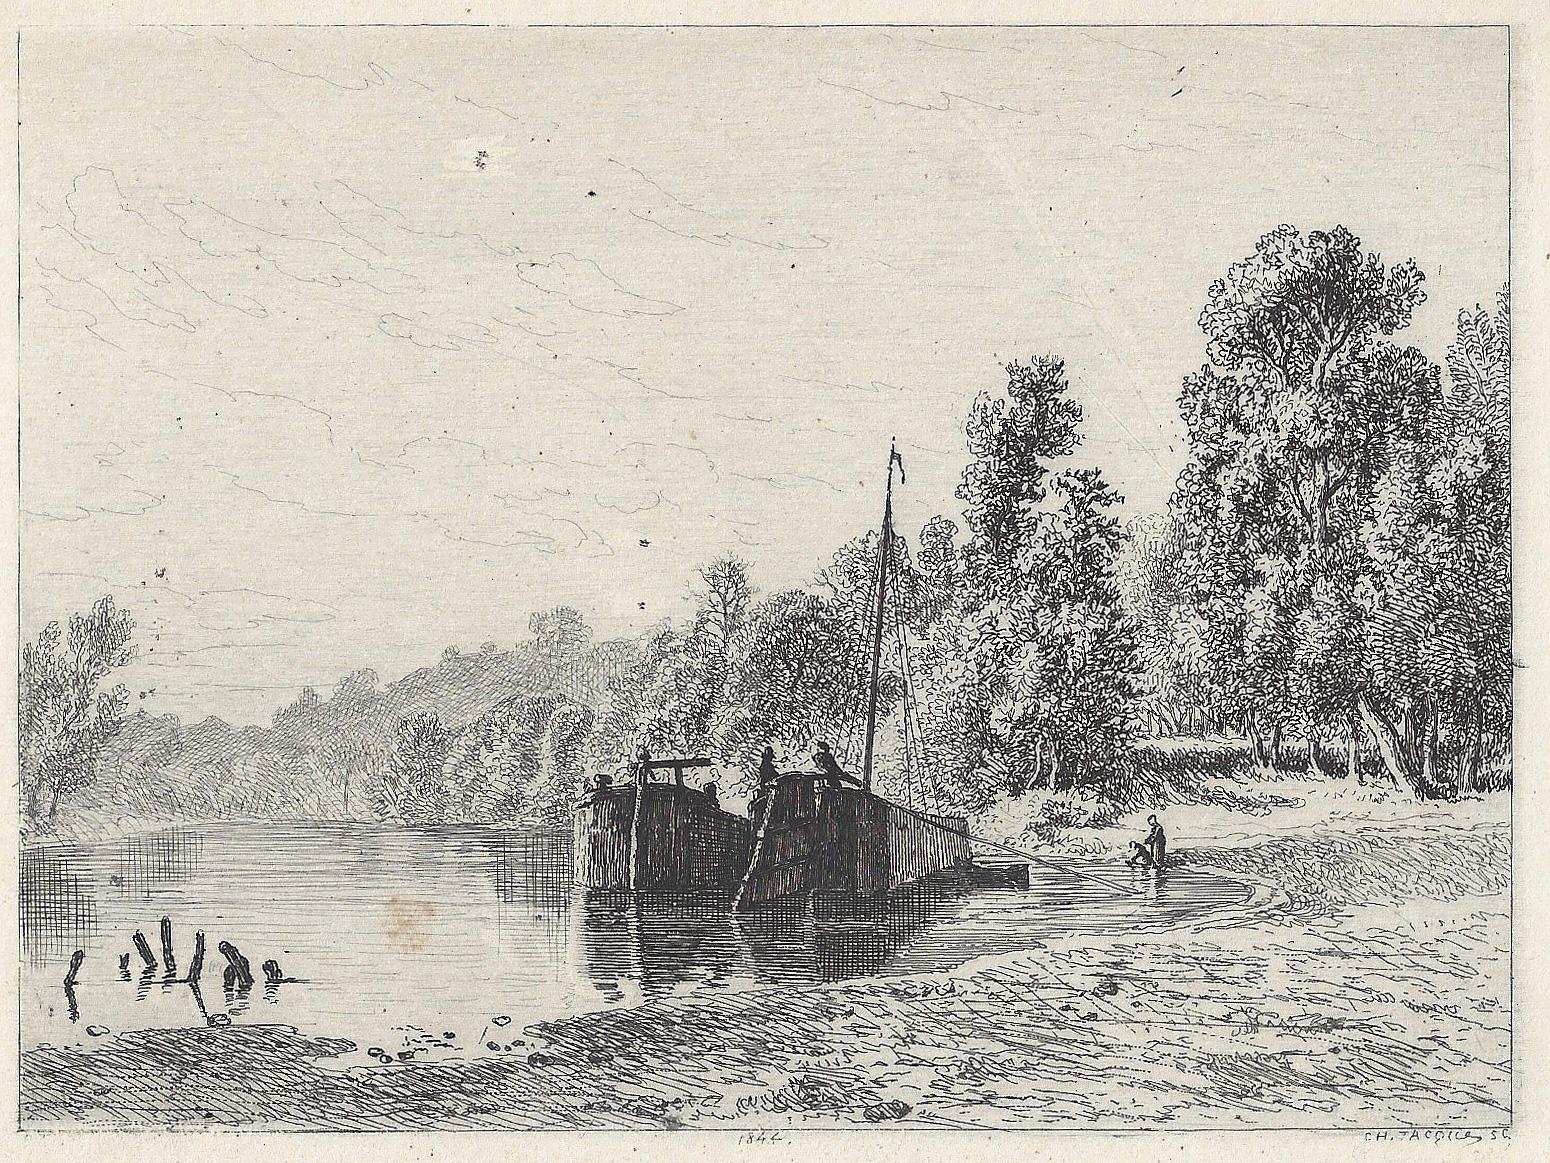 Charles-Emile Jacque Landscape Print - Bords d'une rivière avec deux bateaux (River banks with two boats)